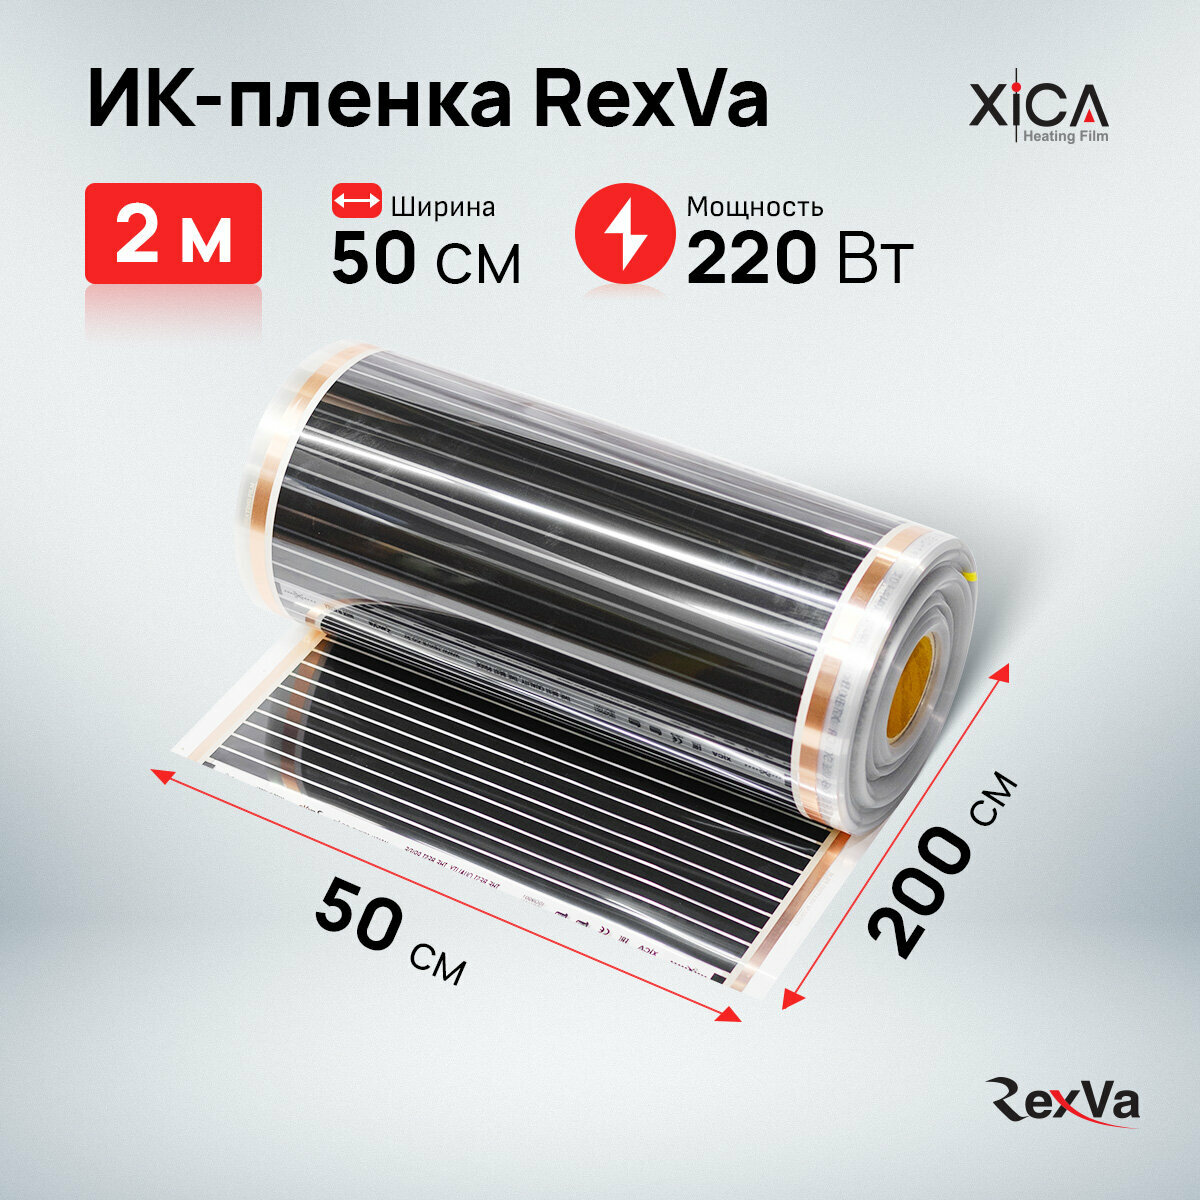 Инфракрасная нагревательная пленка Rexva XICA XM305 220 Вт 50 см.